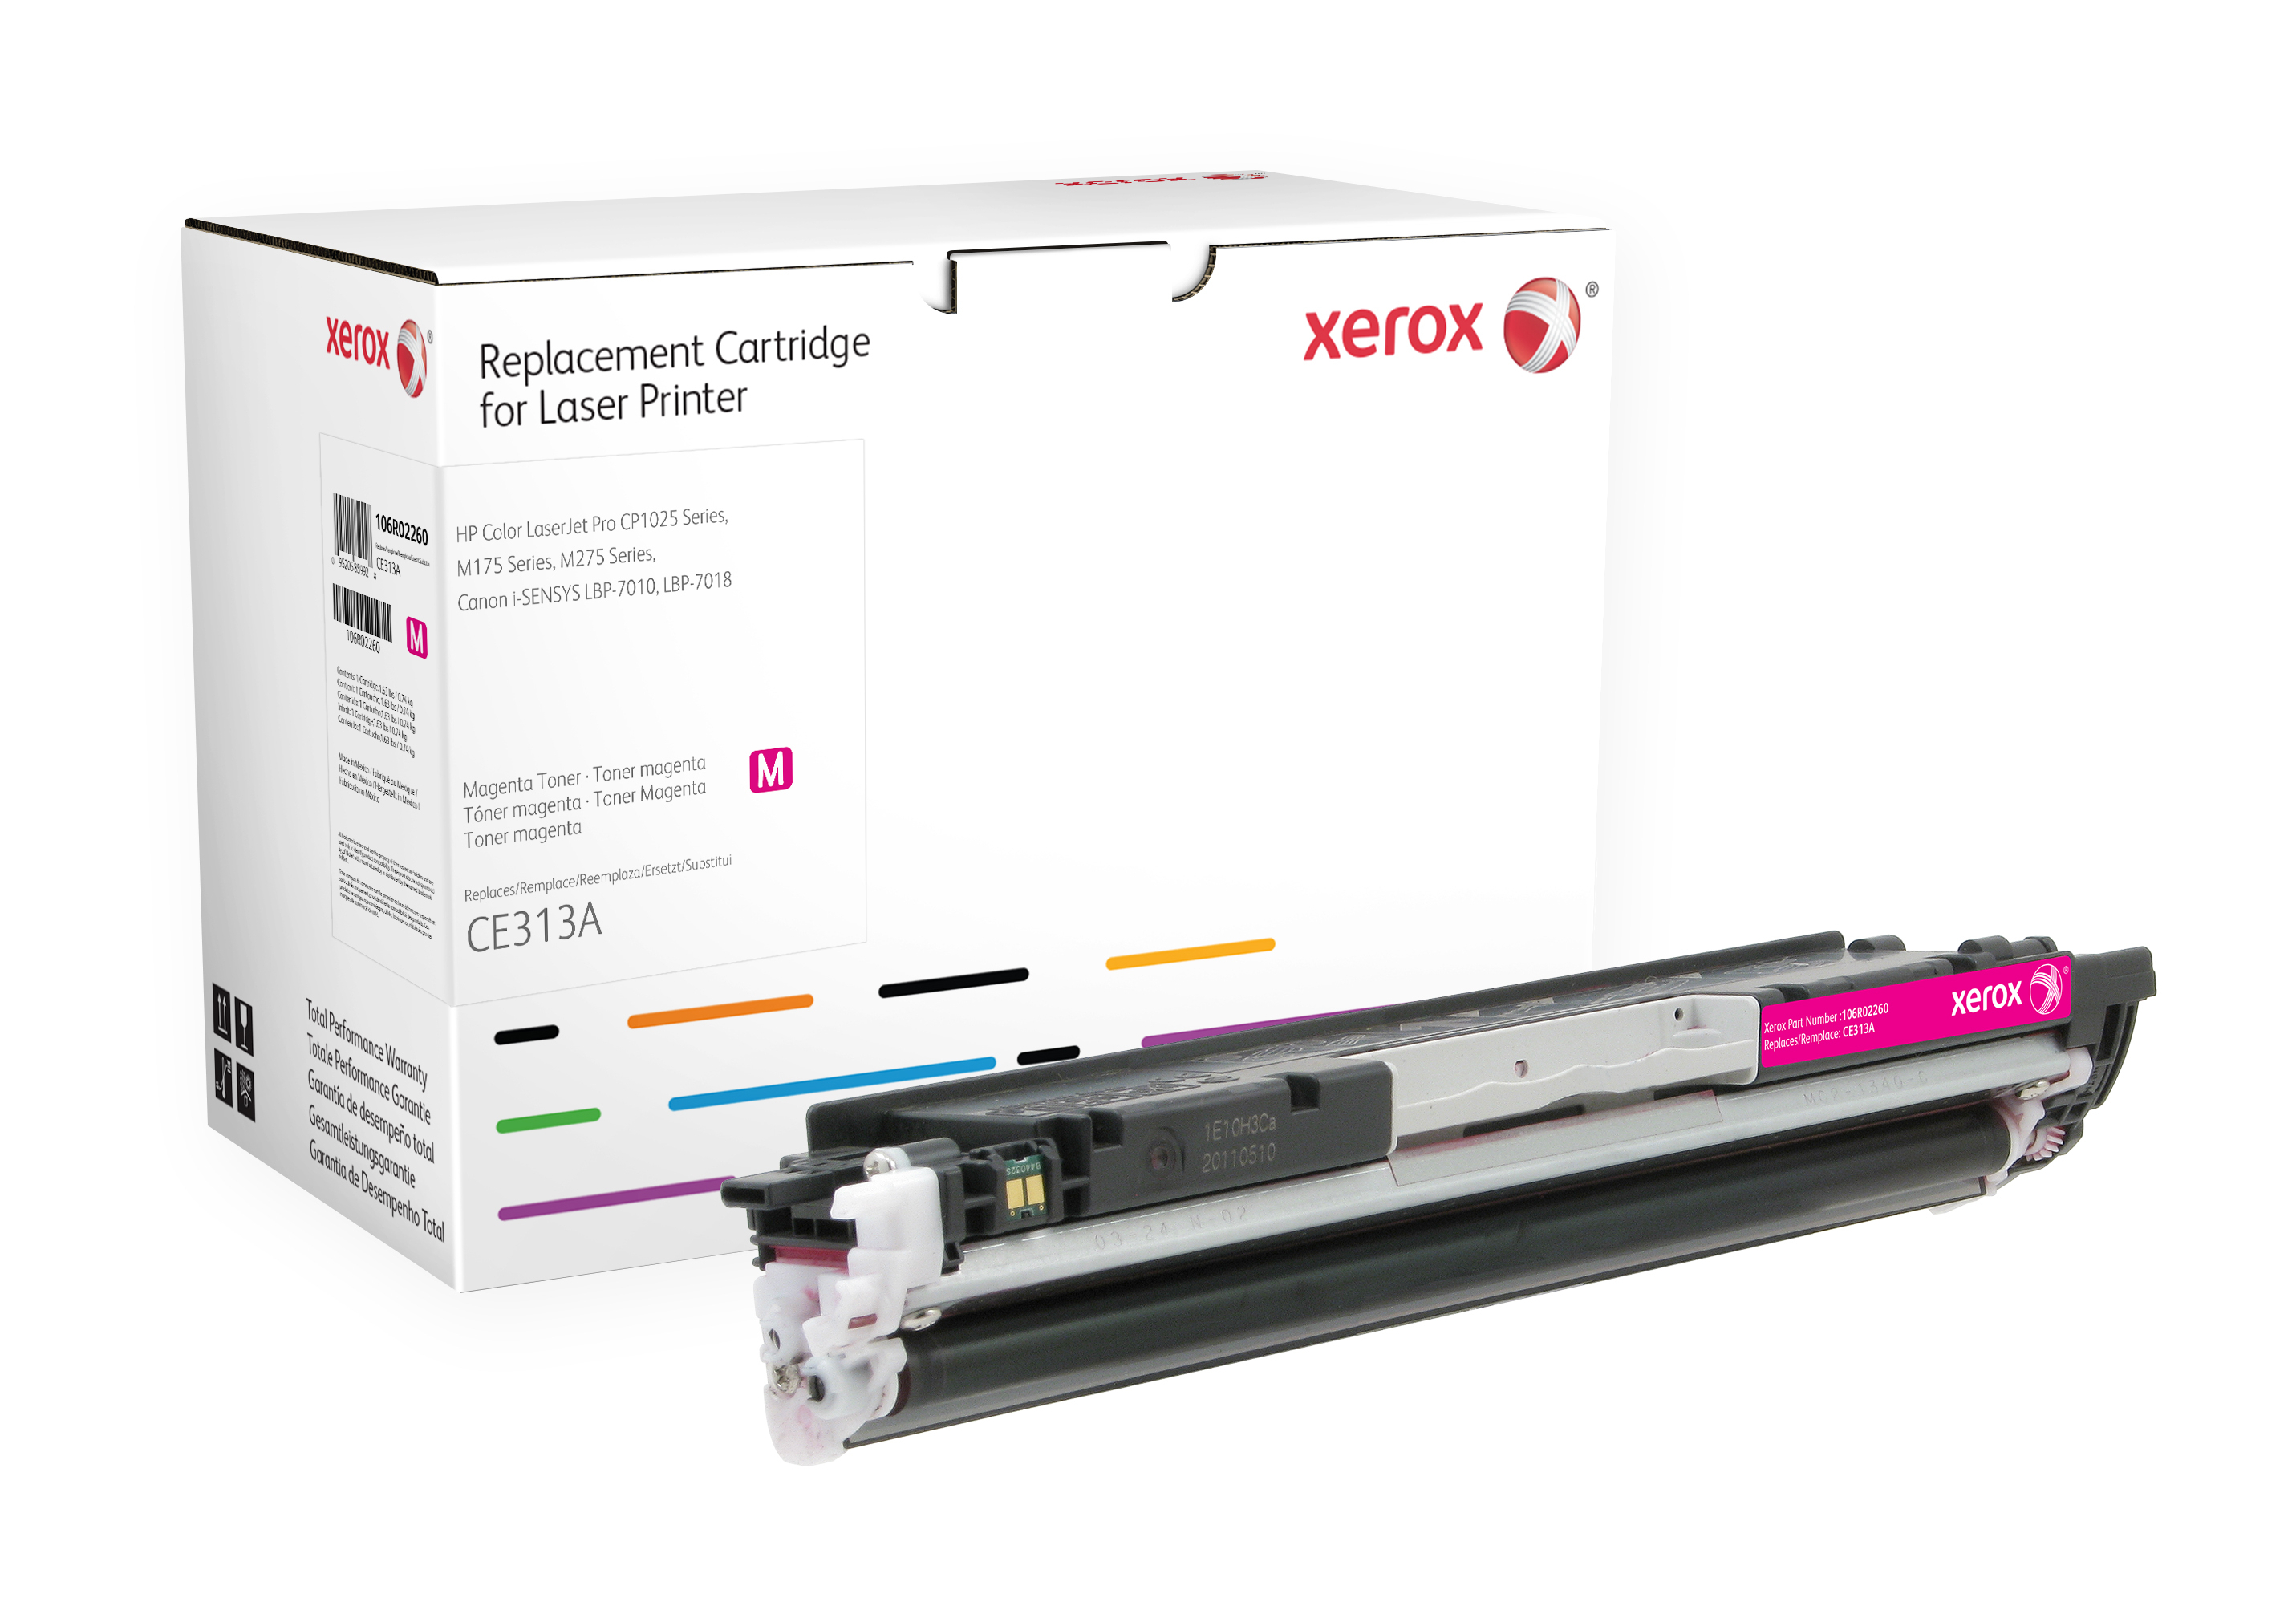 Xerox Magenta toner cartridge. Gelijk aan HP CE313A. Compatibel met HP Colour LaserJet 100 M175 MFP, Colour LaserJet CP1025